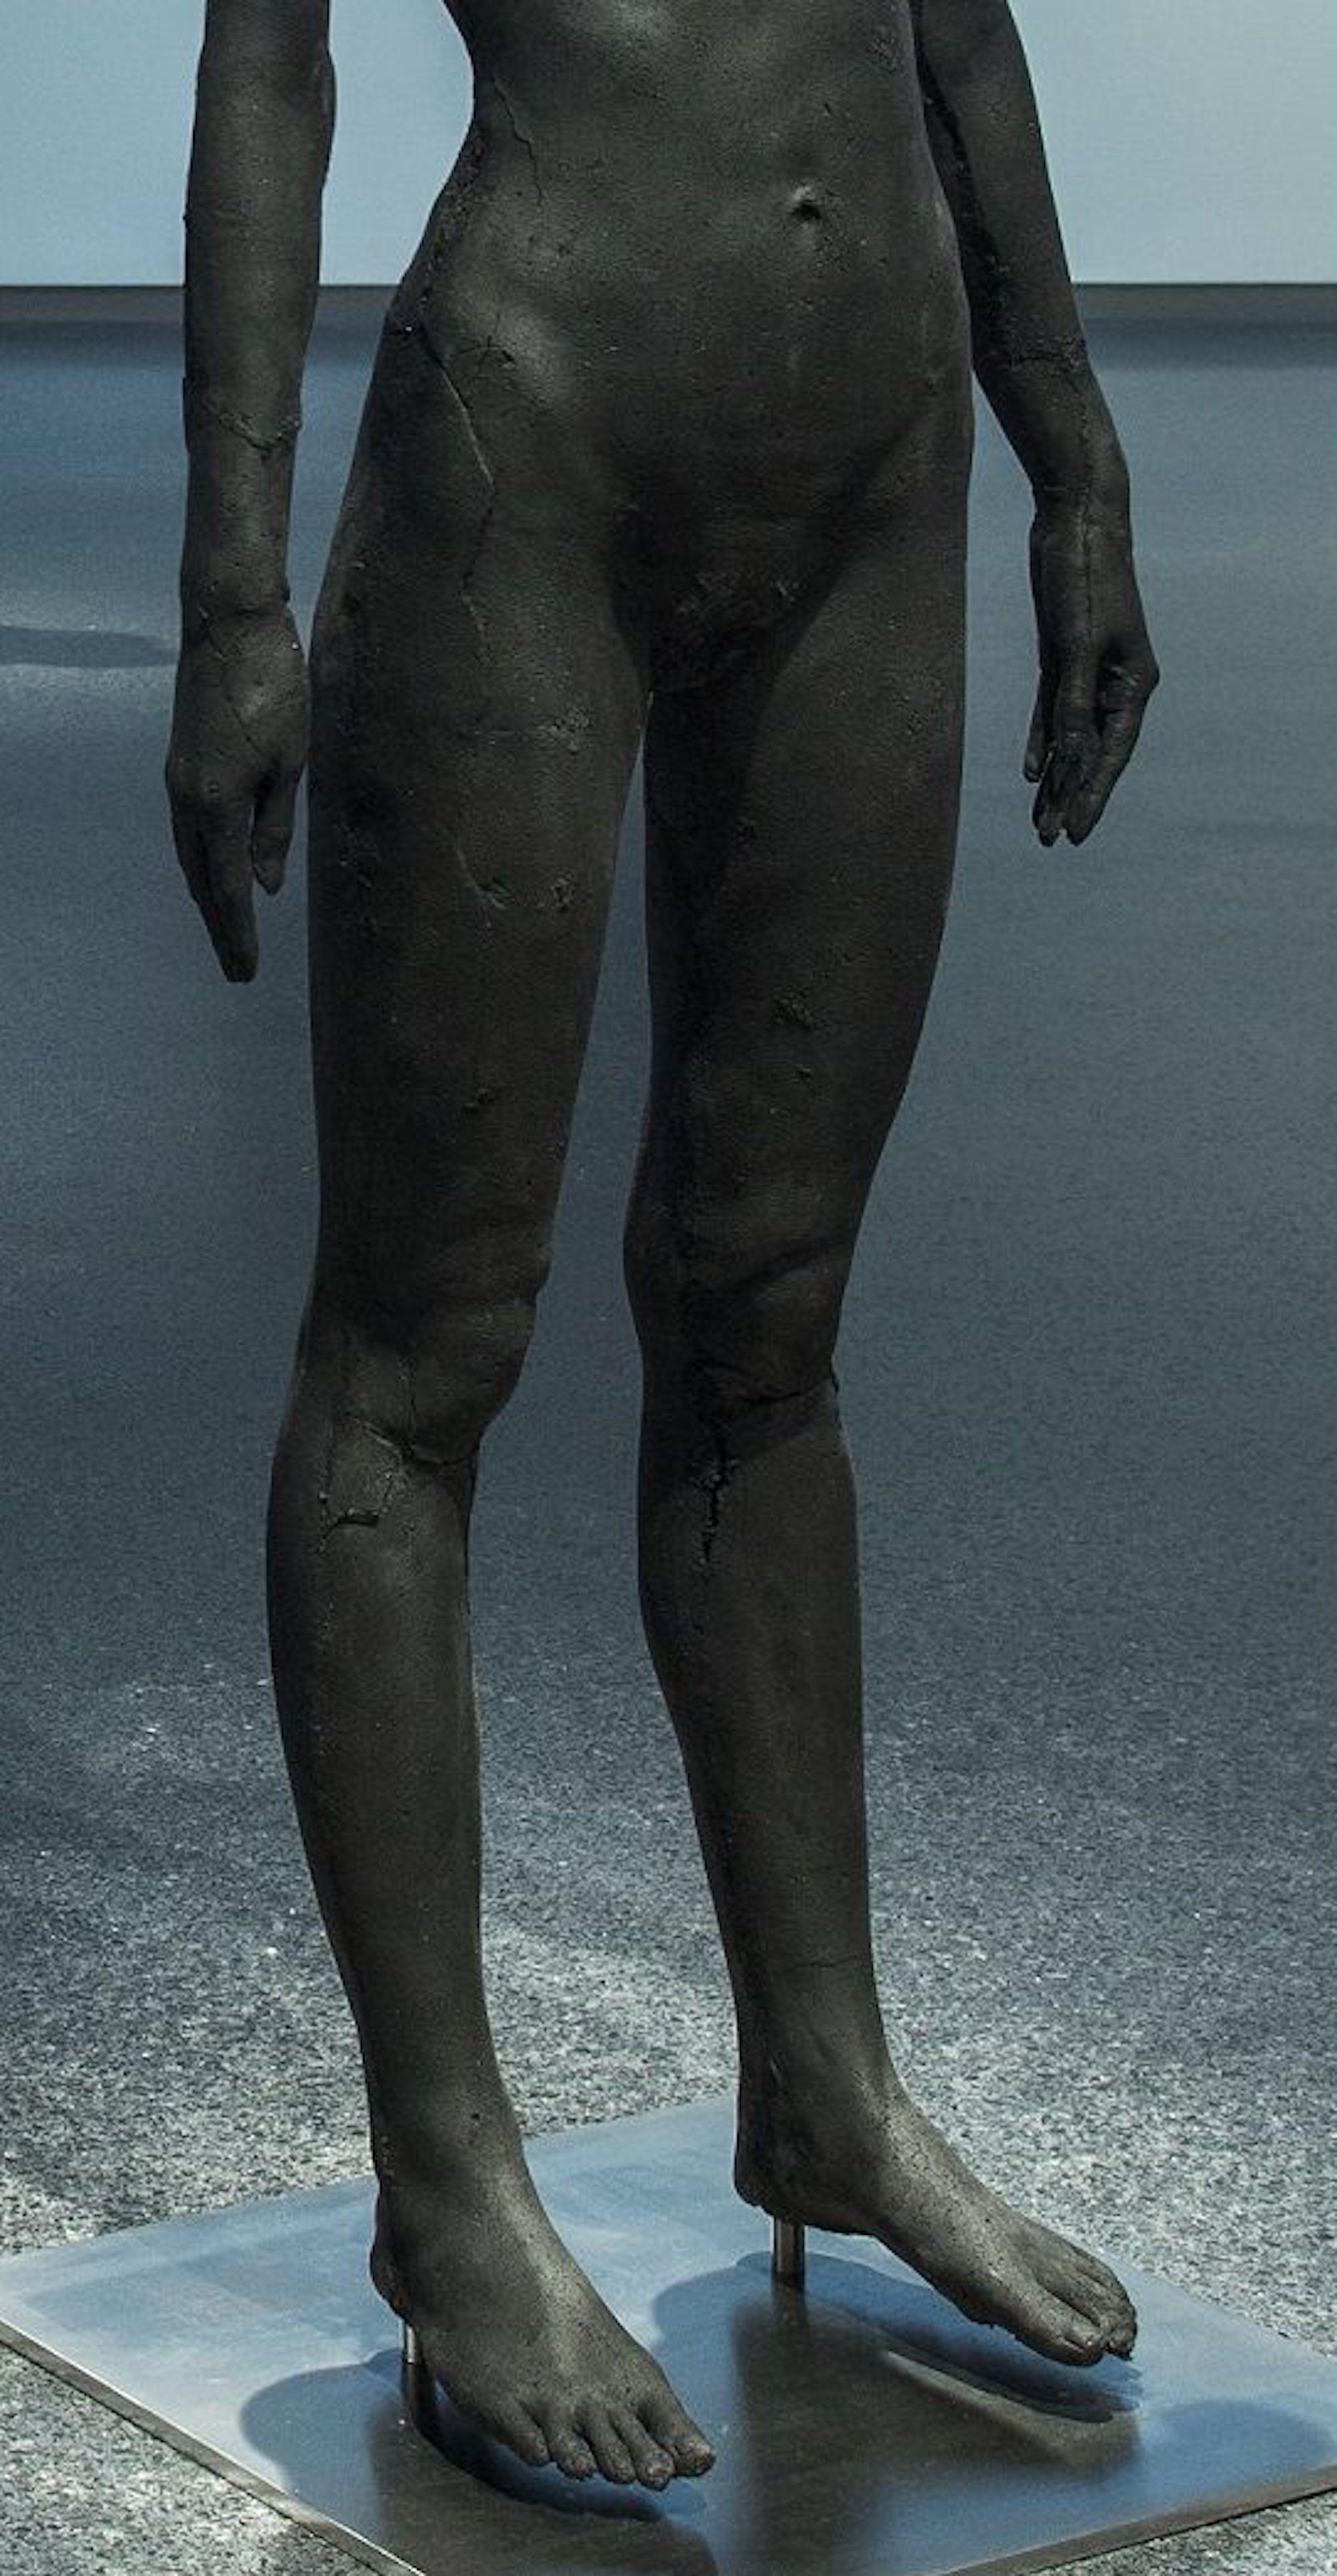 The Presence of Absence - Weiblich (I) von Tom Price - Kohleskulptur, nackter Körper im Angebot 3